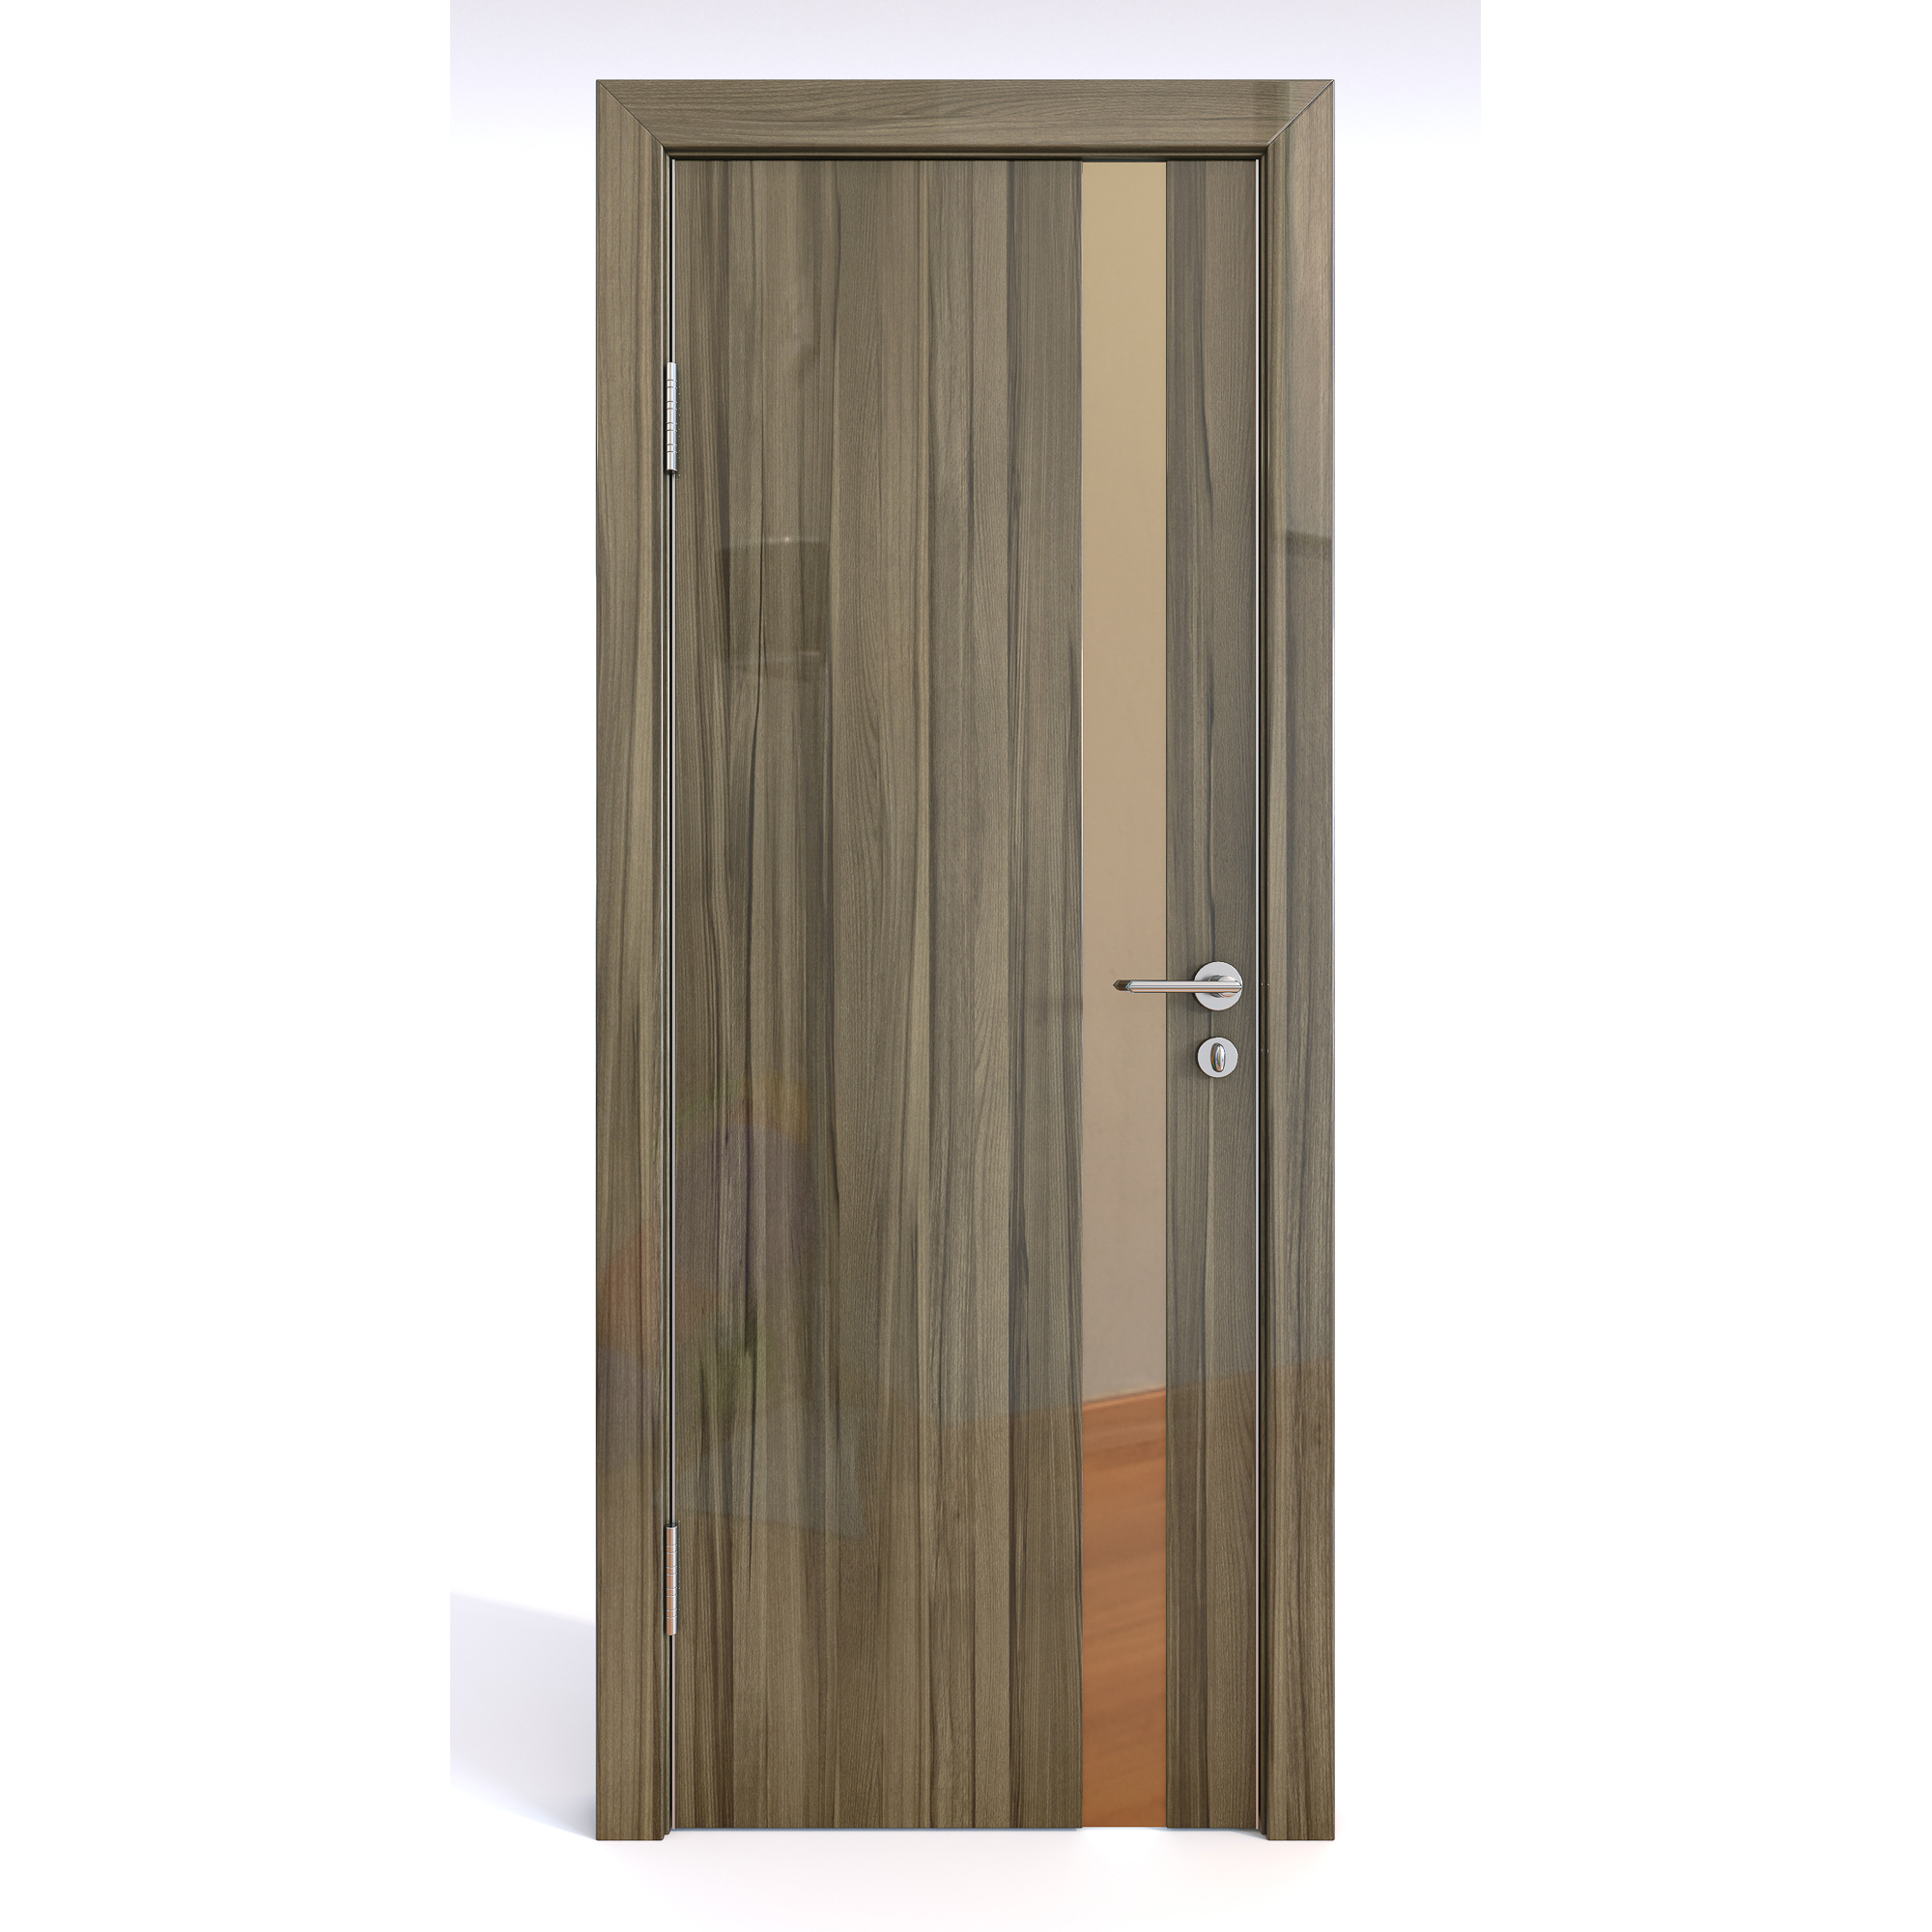 фото Межкомнатная шумоизоляционная дверь до-607 сосна глянец/бронза 200х70 дверная линия